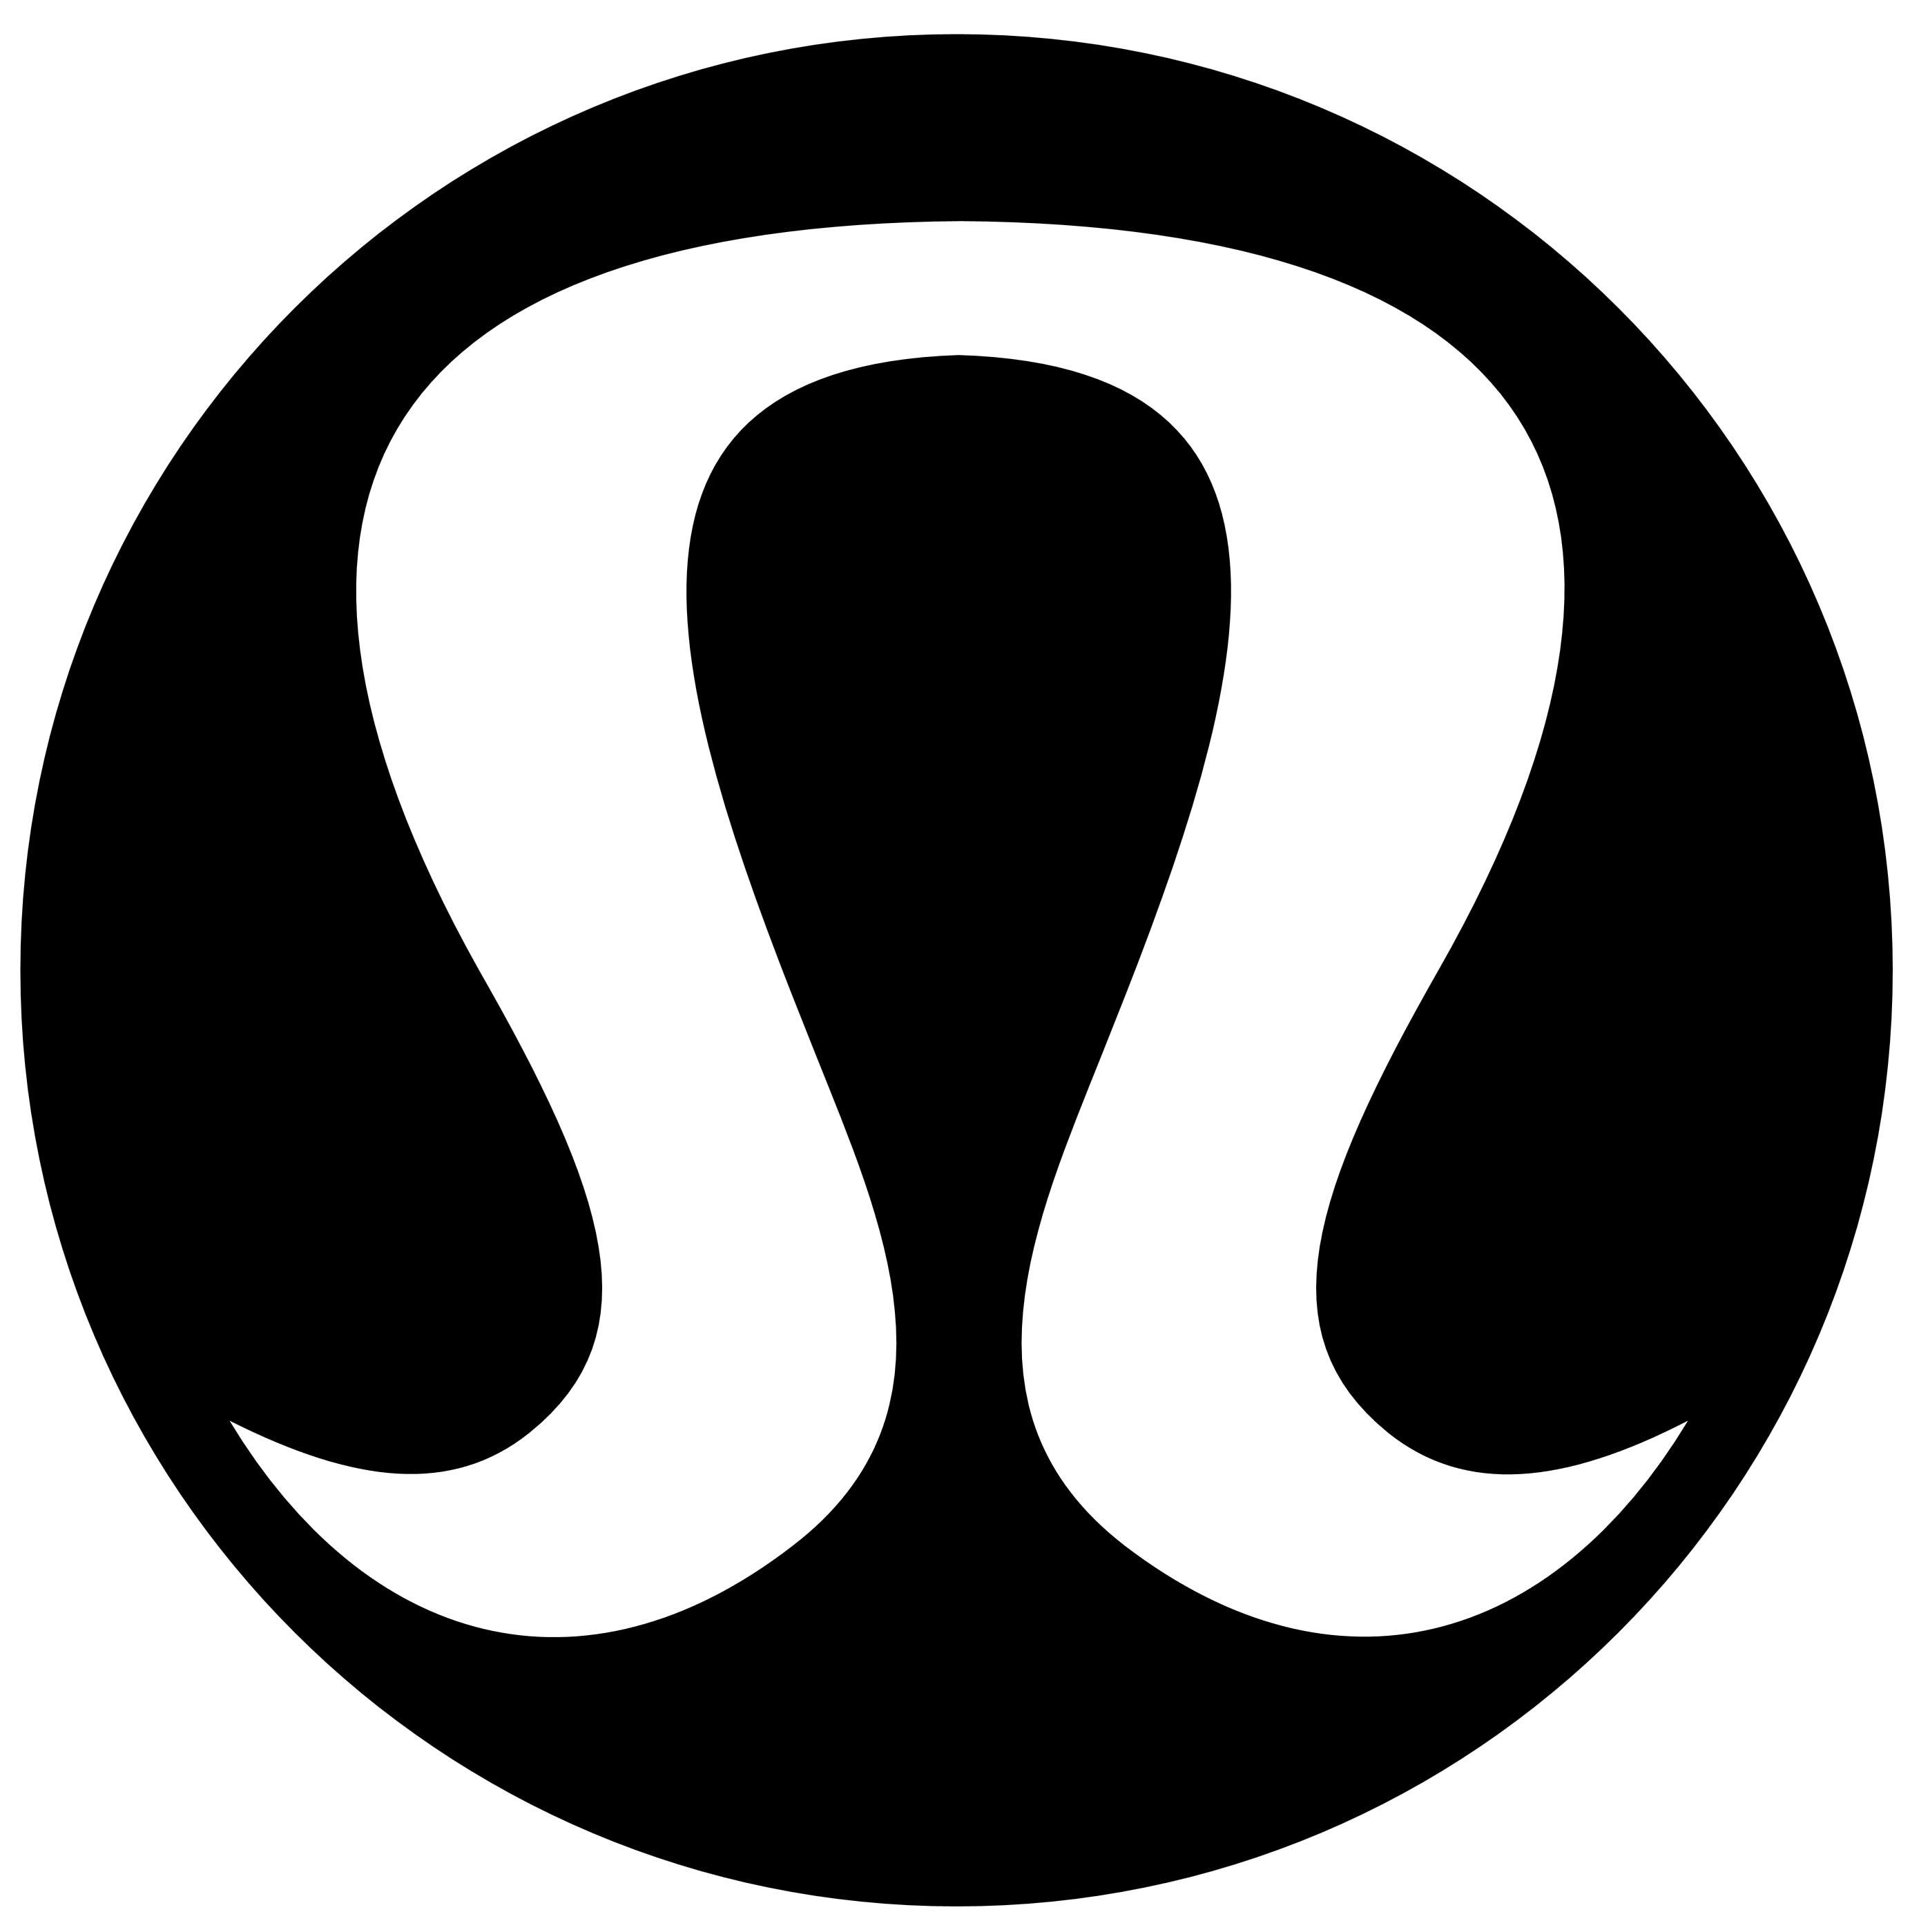 Lululemon – Logos Download